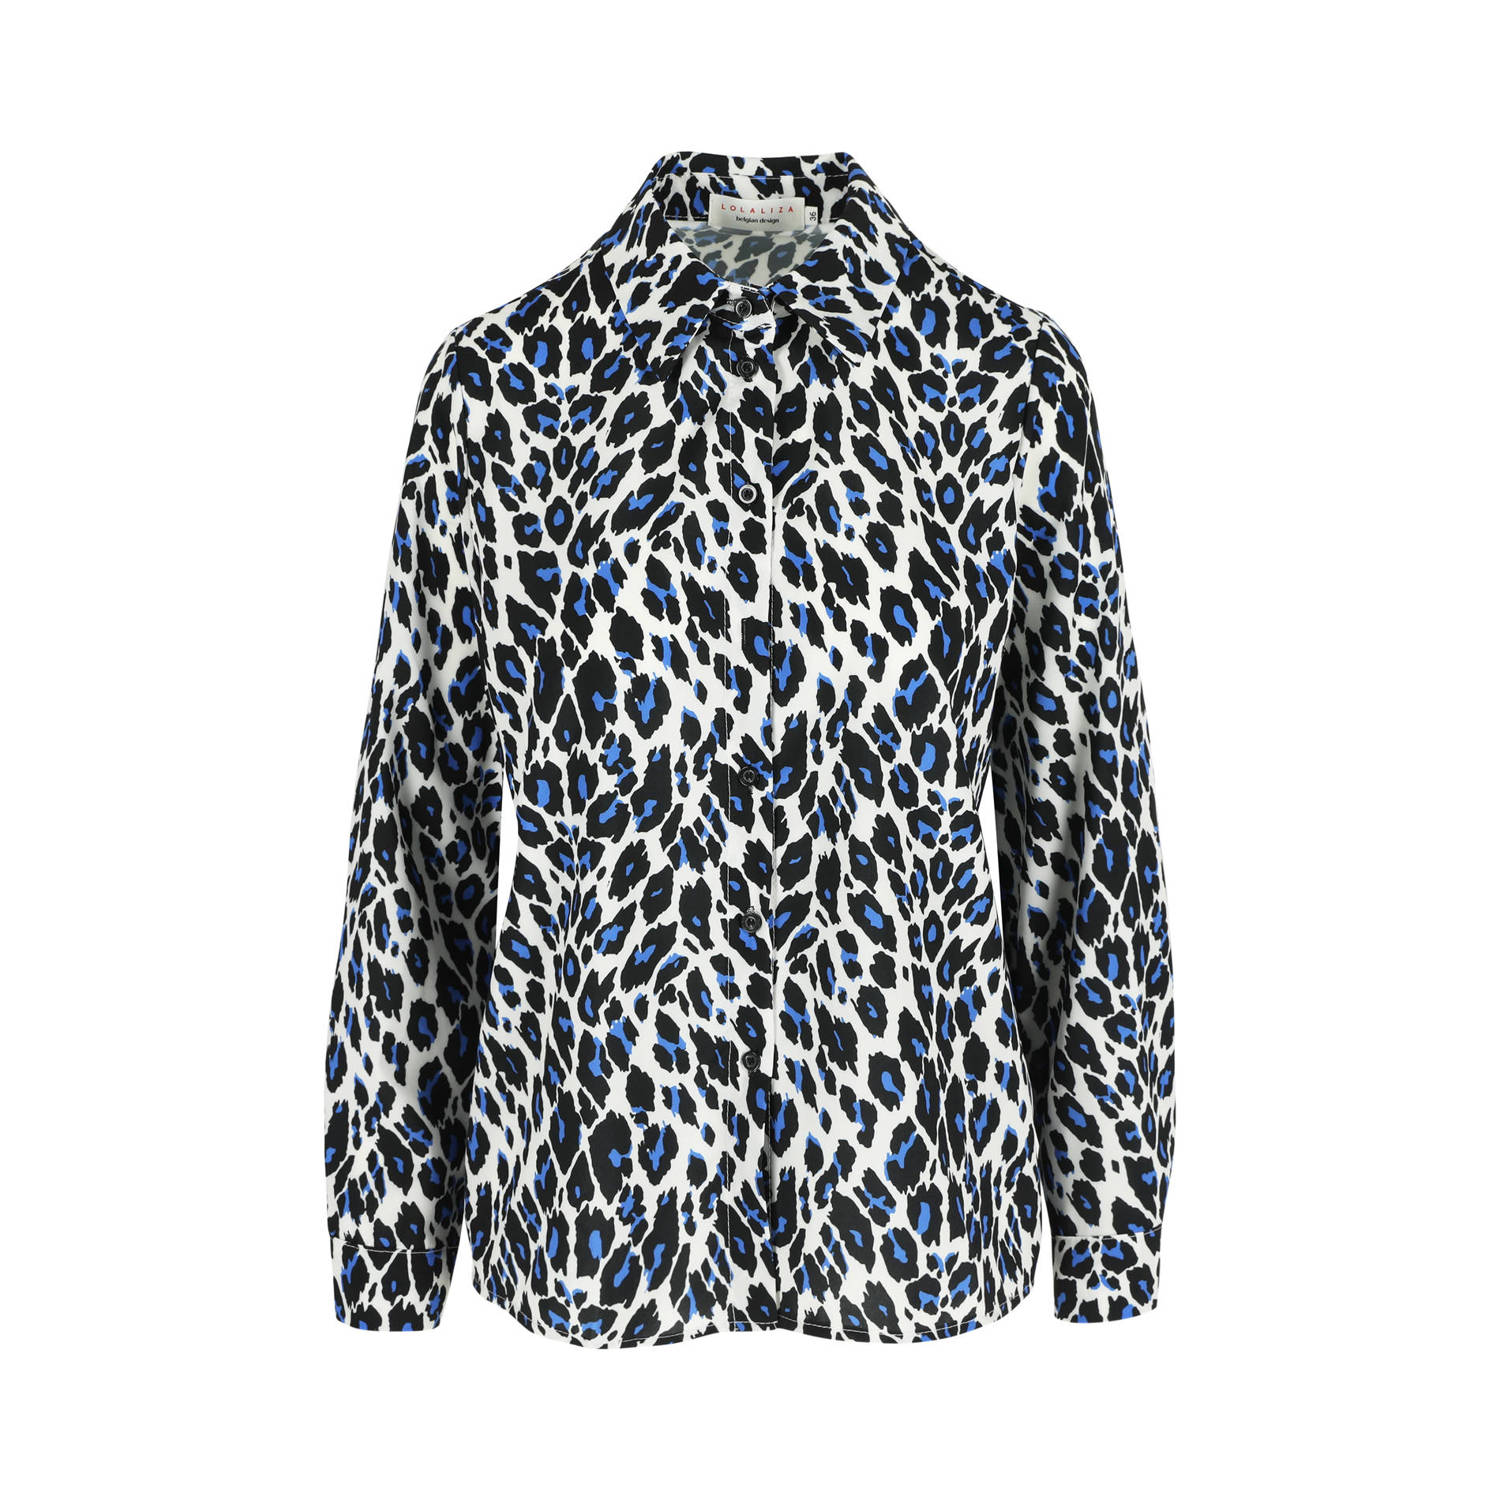 LOLALIZA blouse met dierenprint zwart ecru blauw